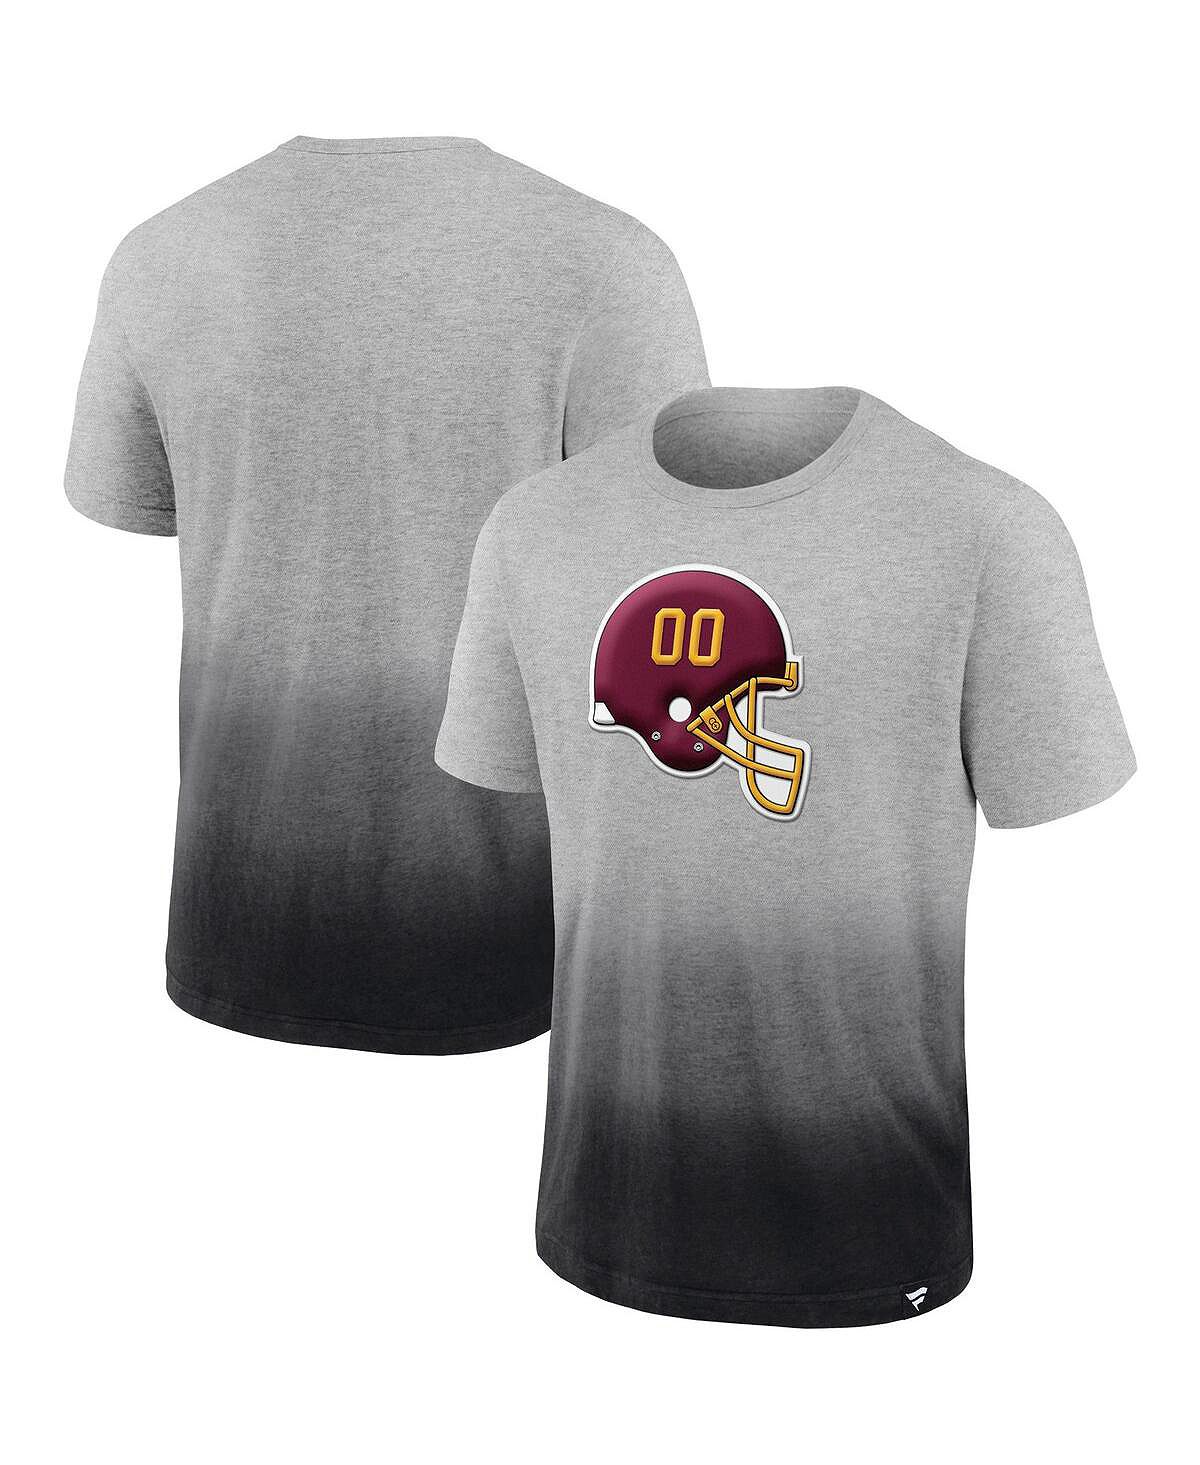 Мужская футболка с фирменной меланжевой серой и черной отделкой washington football team team с эффектом омбре Fanatics, мульти